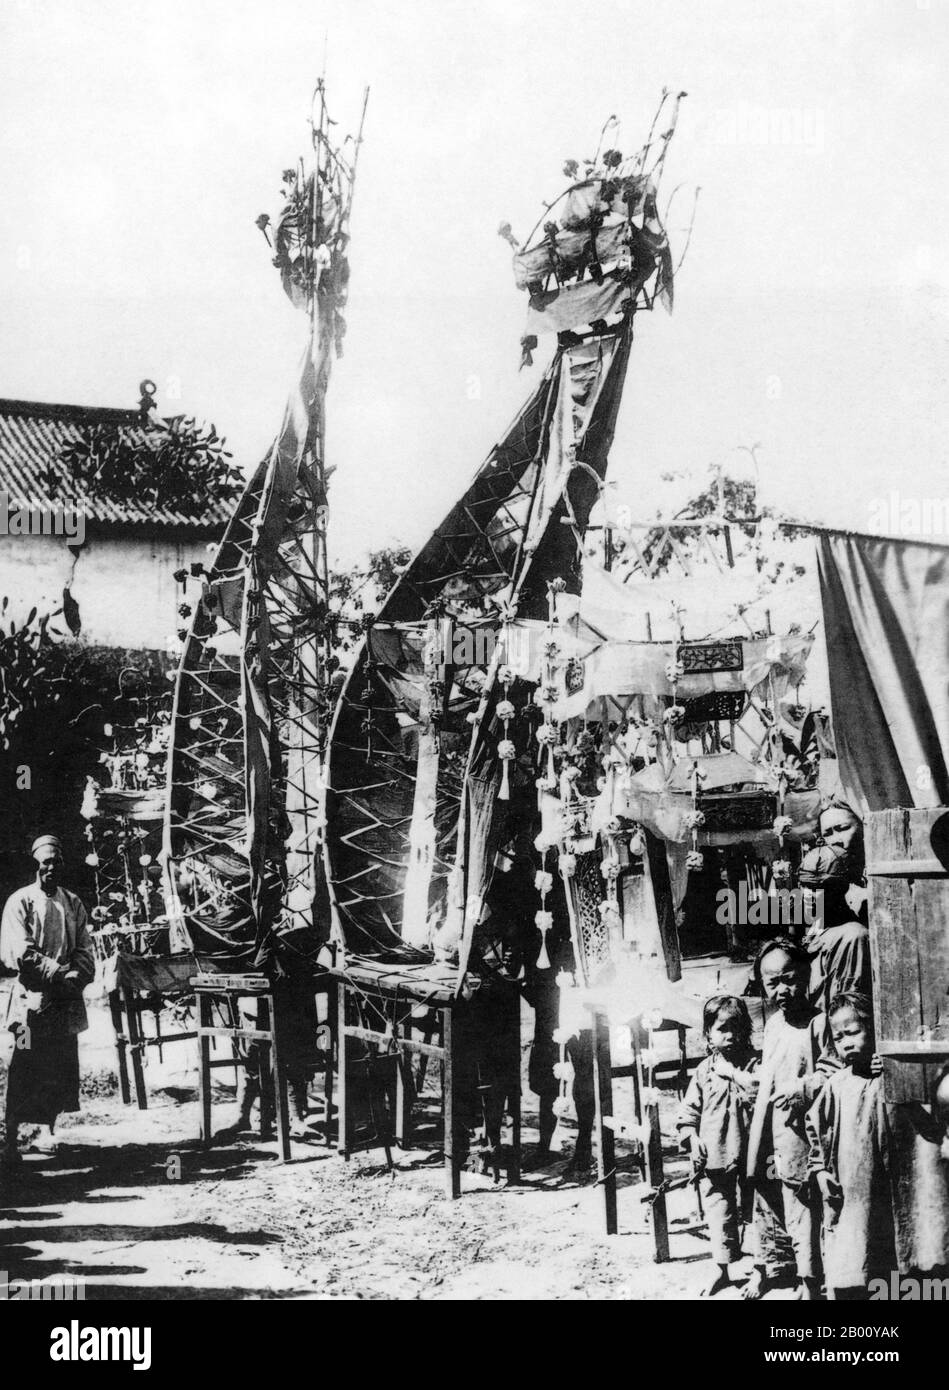 Cina: Una fotografia del 1905 dei preparativi per un funerale a Simao, provincia di Yunnan, Cina sudoccidentale. Il Distretto di SIMAO, precedentemente noto come Distretto di Cuiyun, è una municipalità sotto la giurisdizione della Prefettura di pu'er, nella Provincia di Yunnan, in Cina. Si trova vicino al confine con il Myanmar. Foto Stock